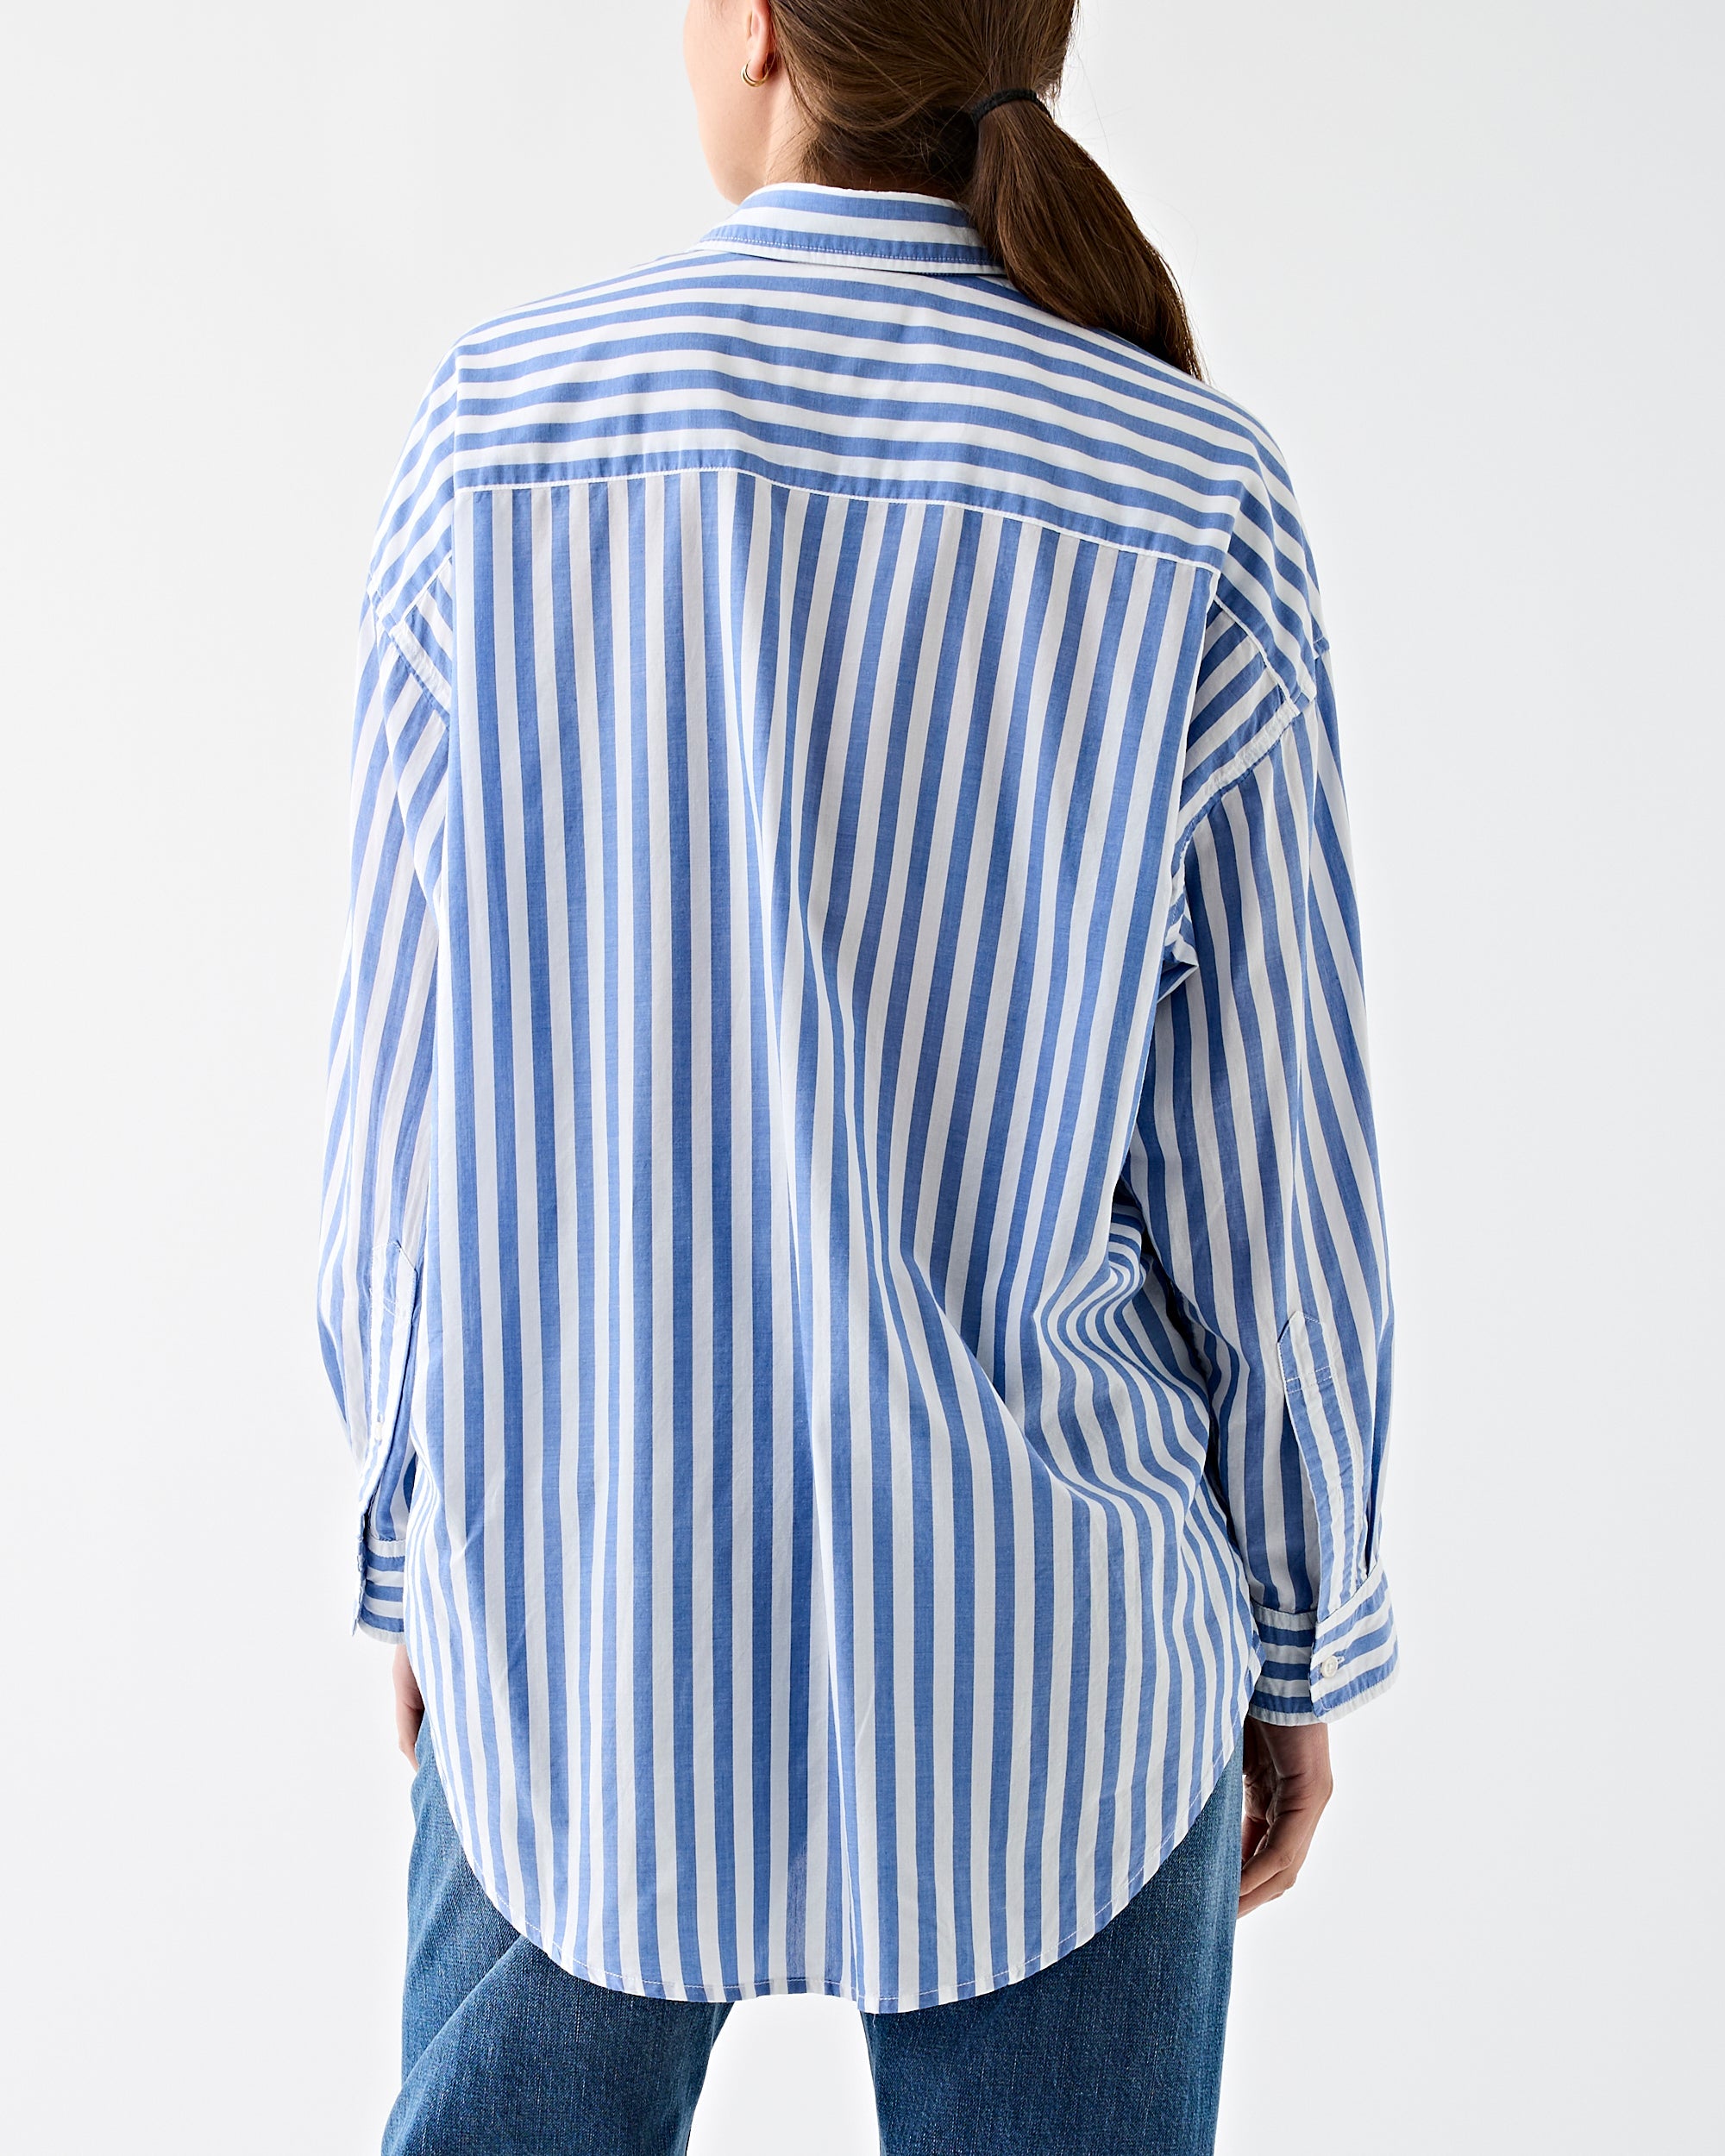 Denimist Button Front Shirt Wide Blue Stripe Shirt L/S Women